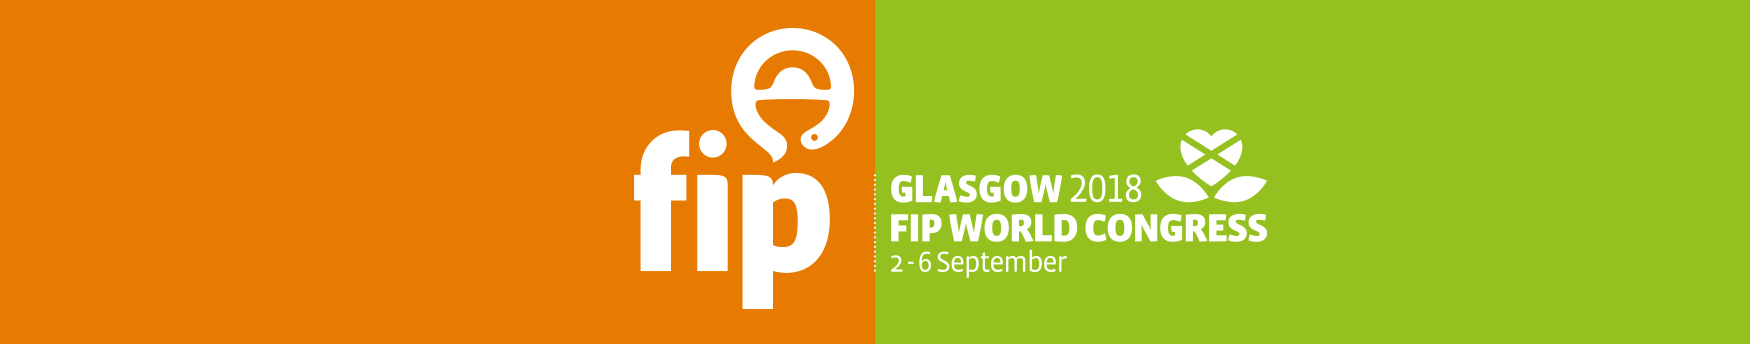 FIP Glasgow 2018 - Web - 1750px